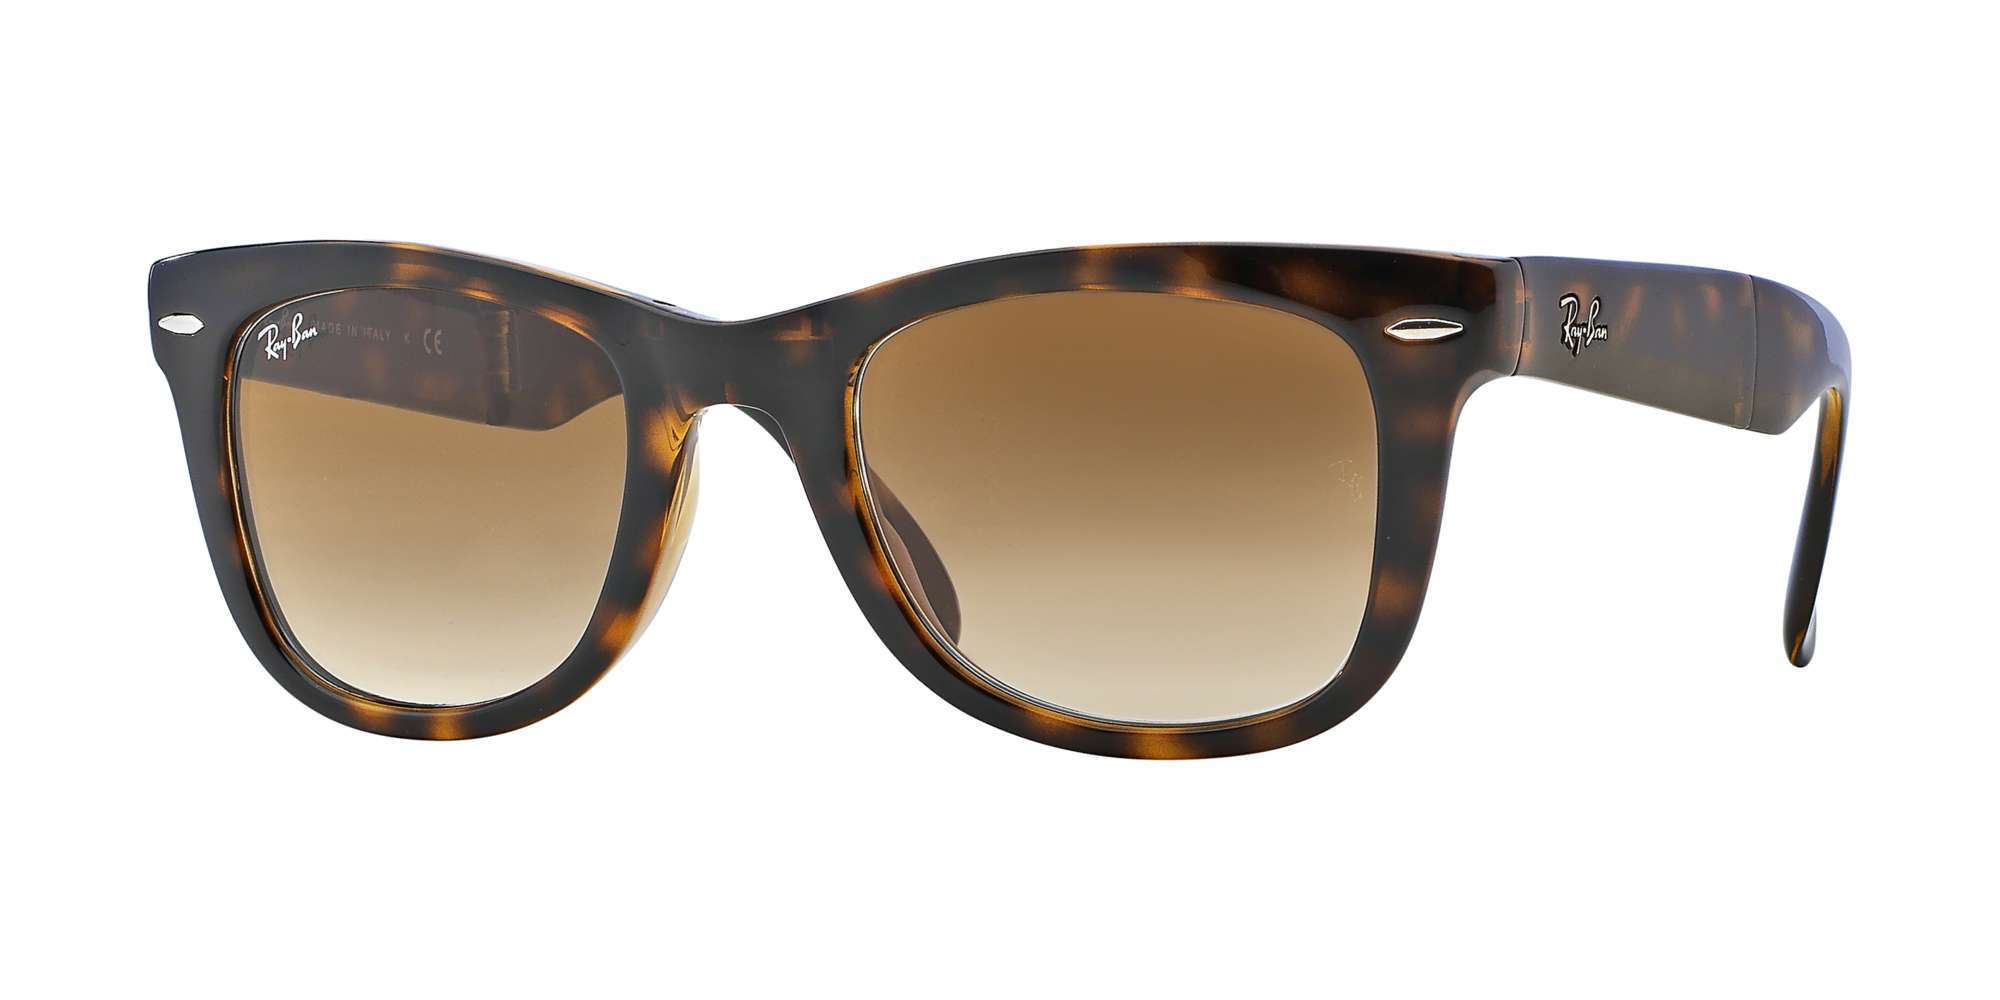 RB4105 - Folding Wayfarer Sunglasses | Best Buy Eyeglasses